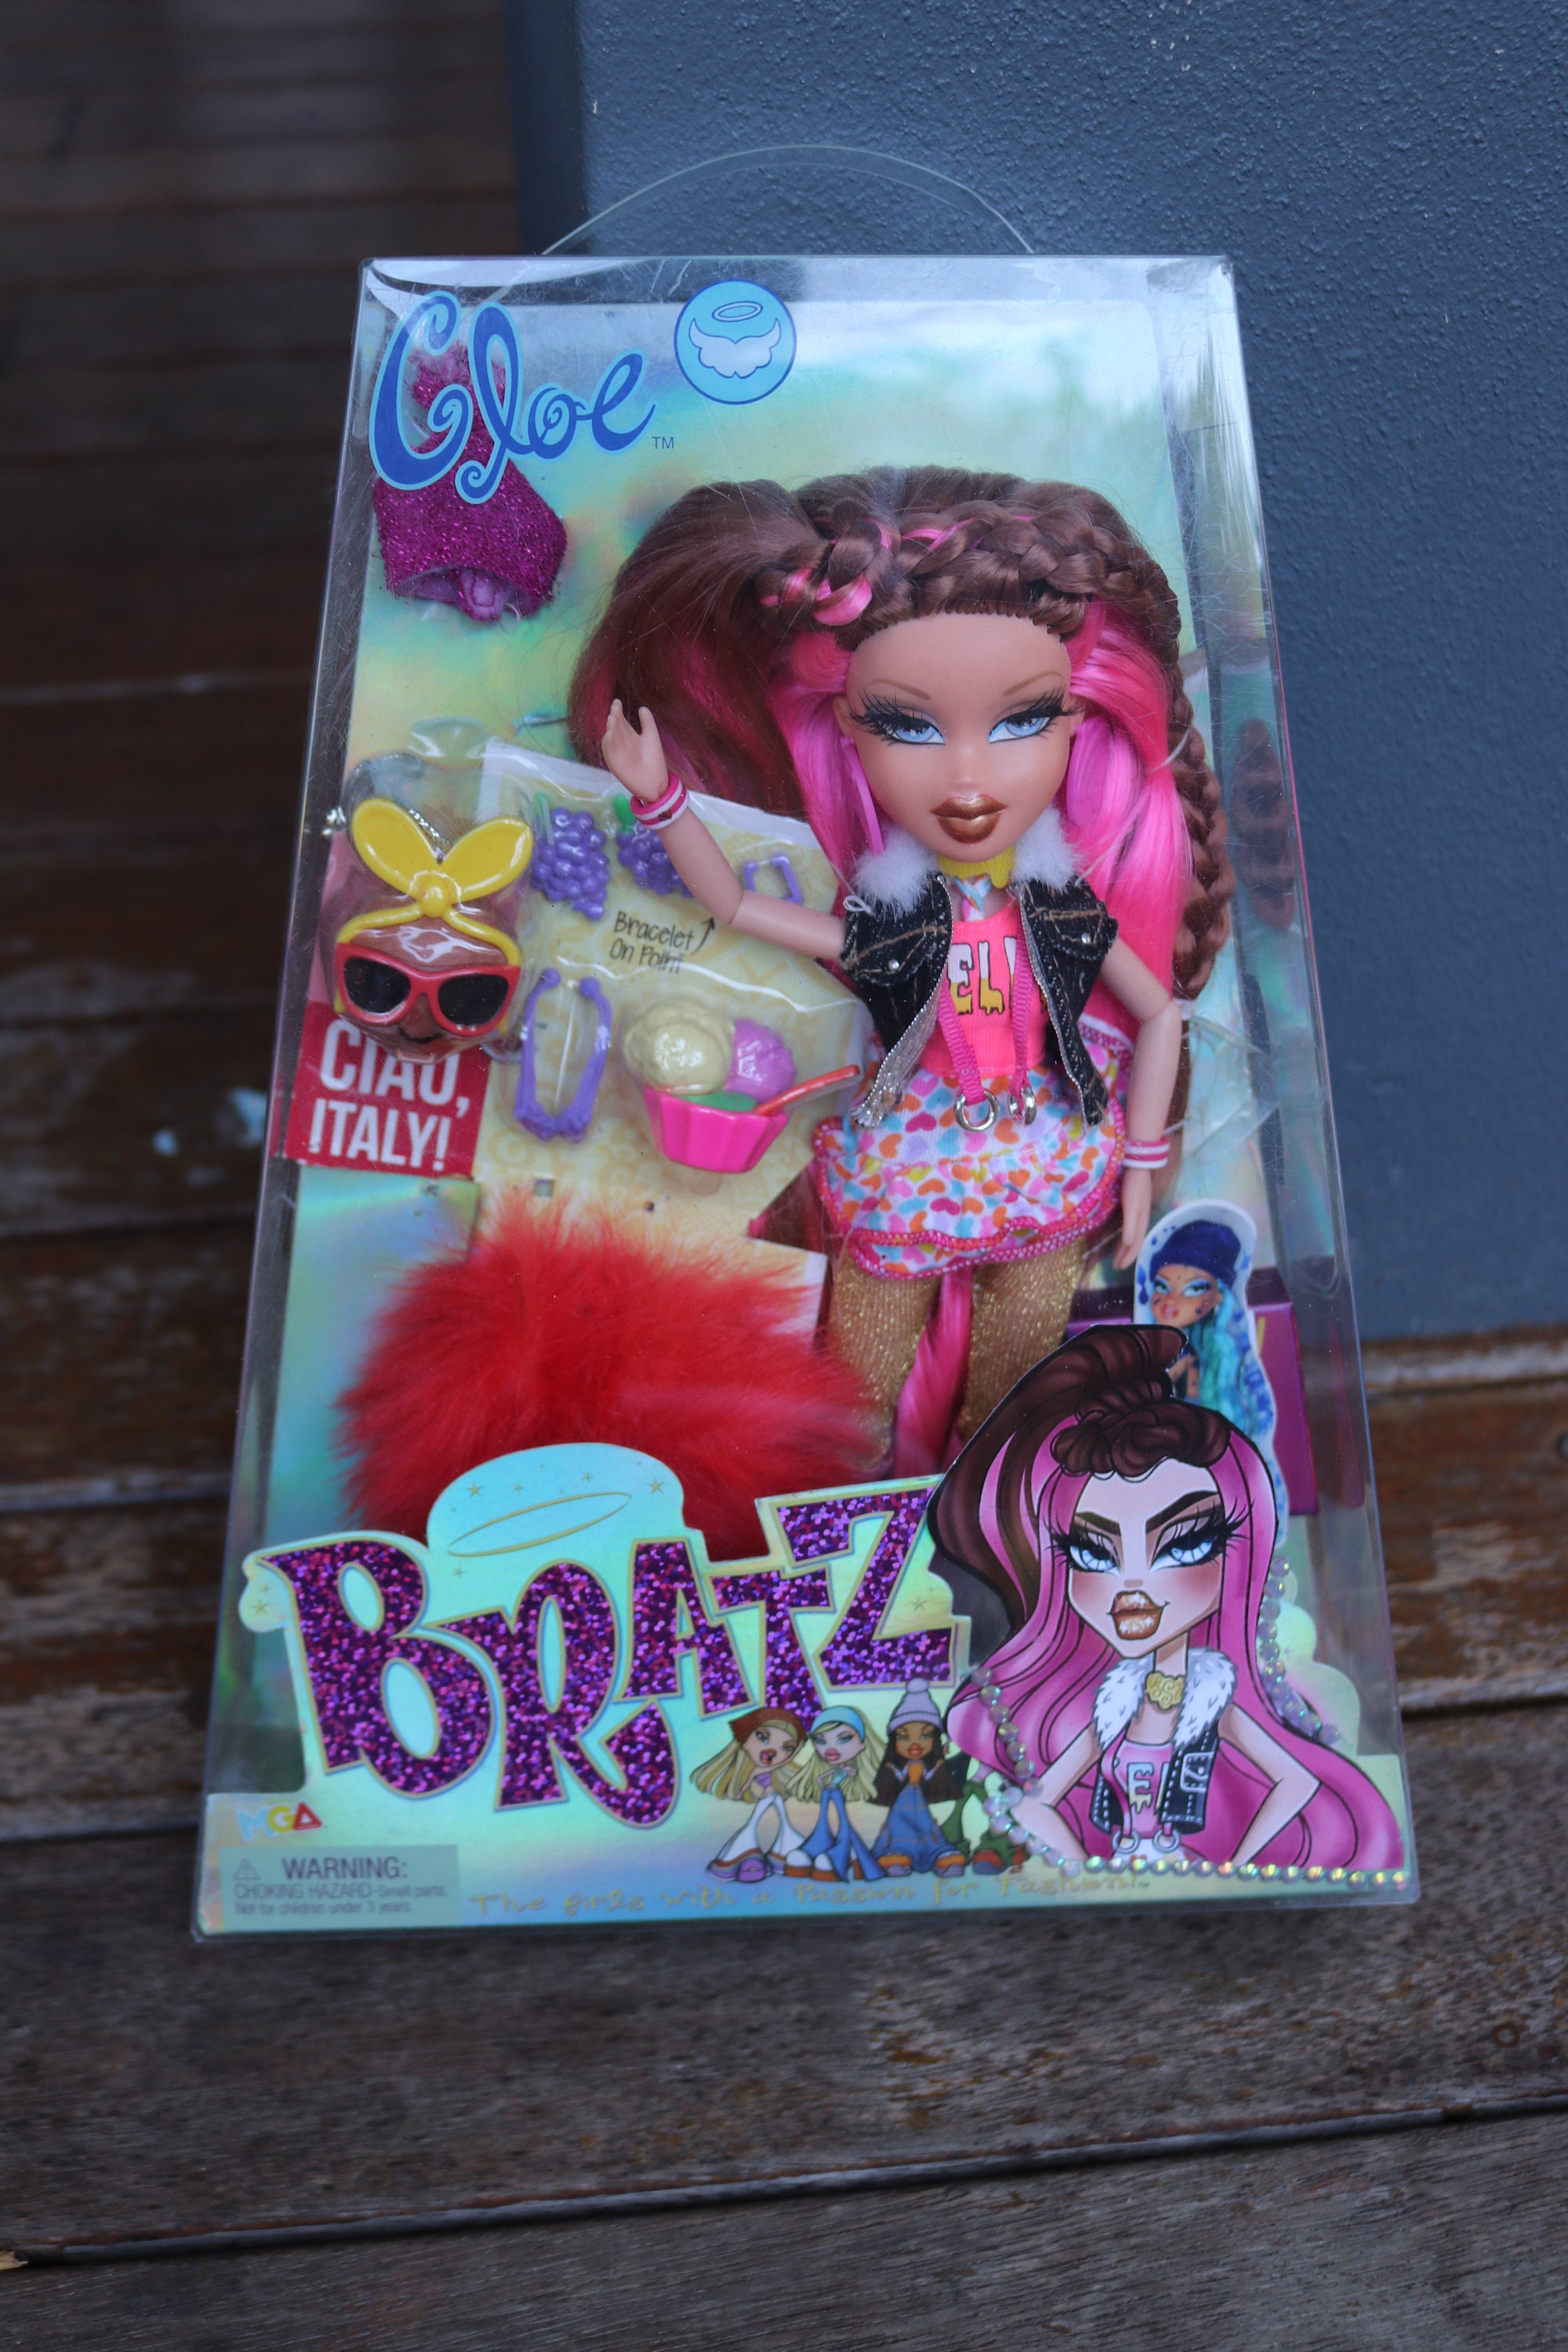 bratz, Toys, Bratzillaz House Of Witchez Back To Magic Sashabella Paws  Doll Mga